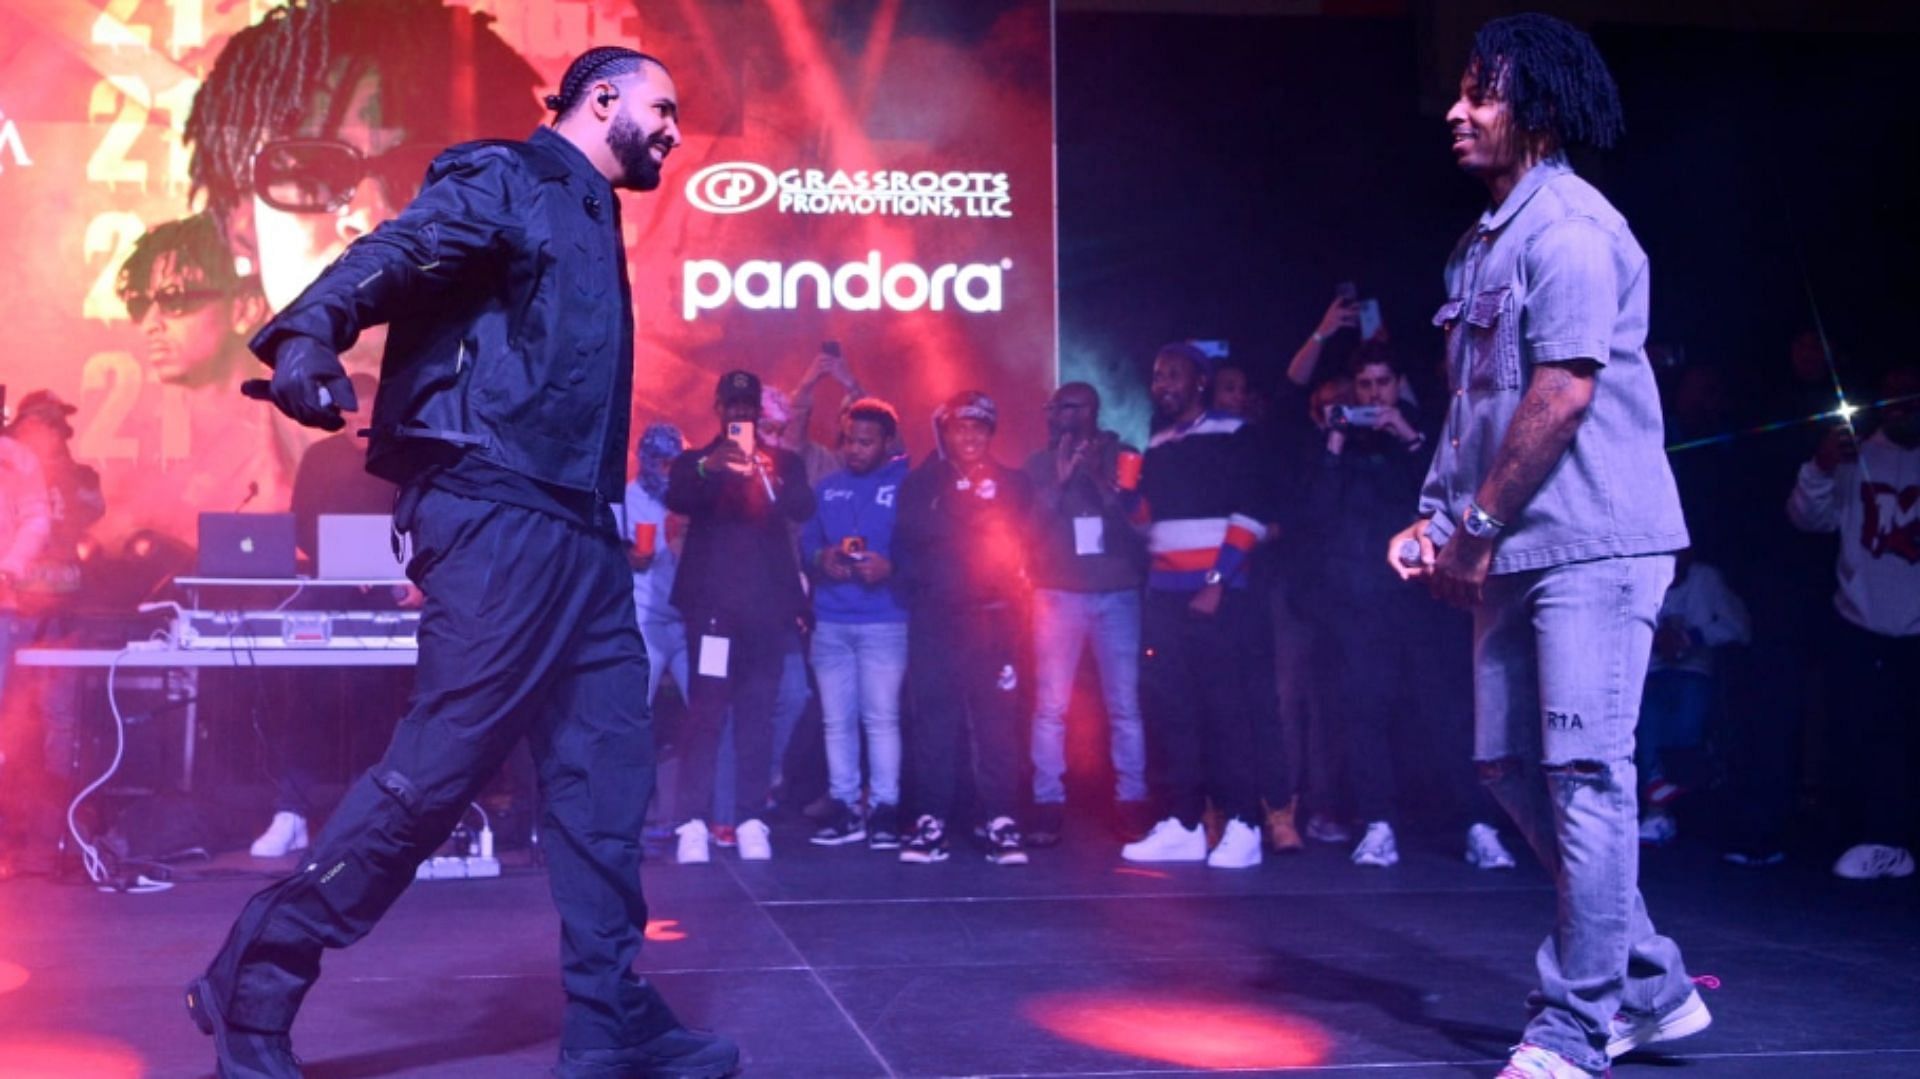 Download American hip-hop artist 21 Savage performing on stage